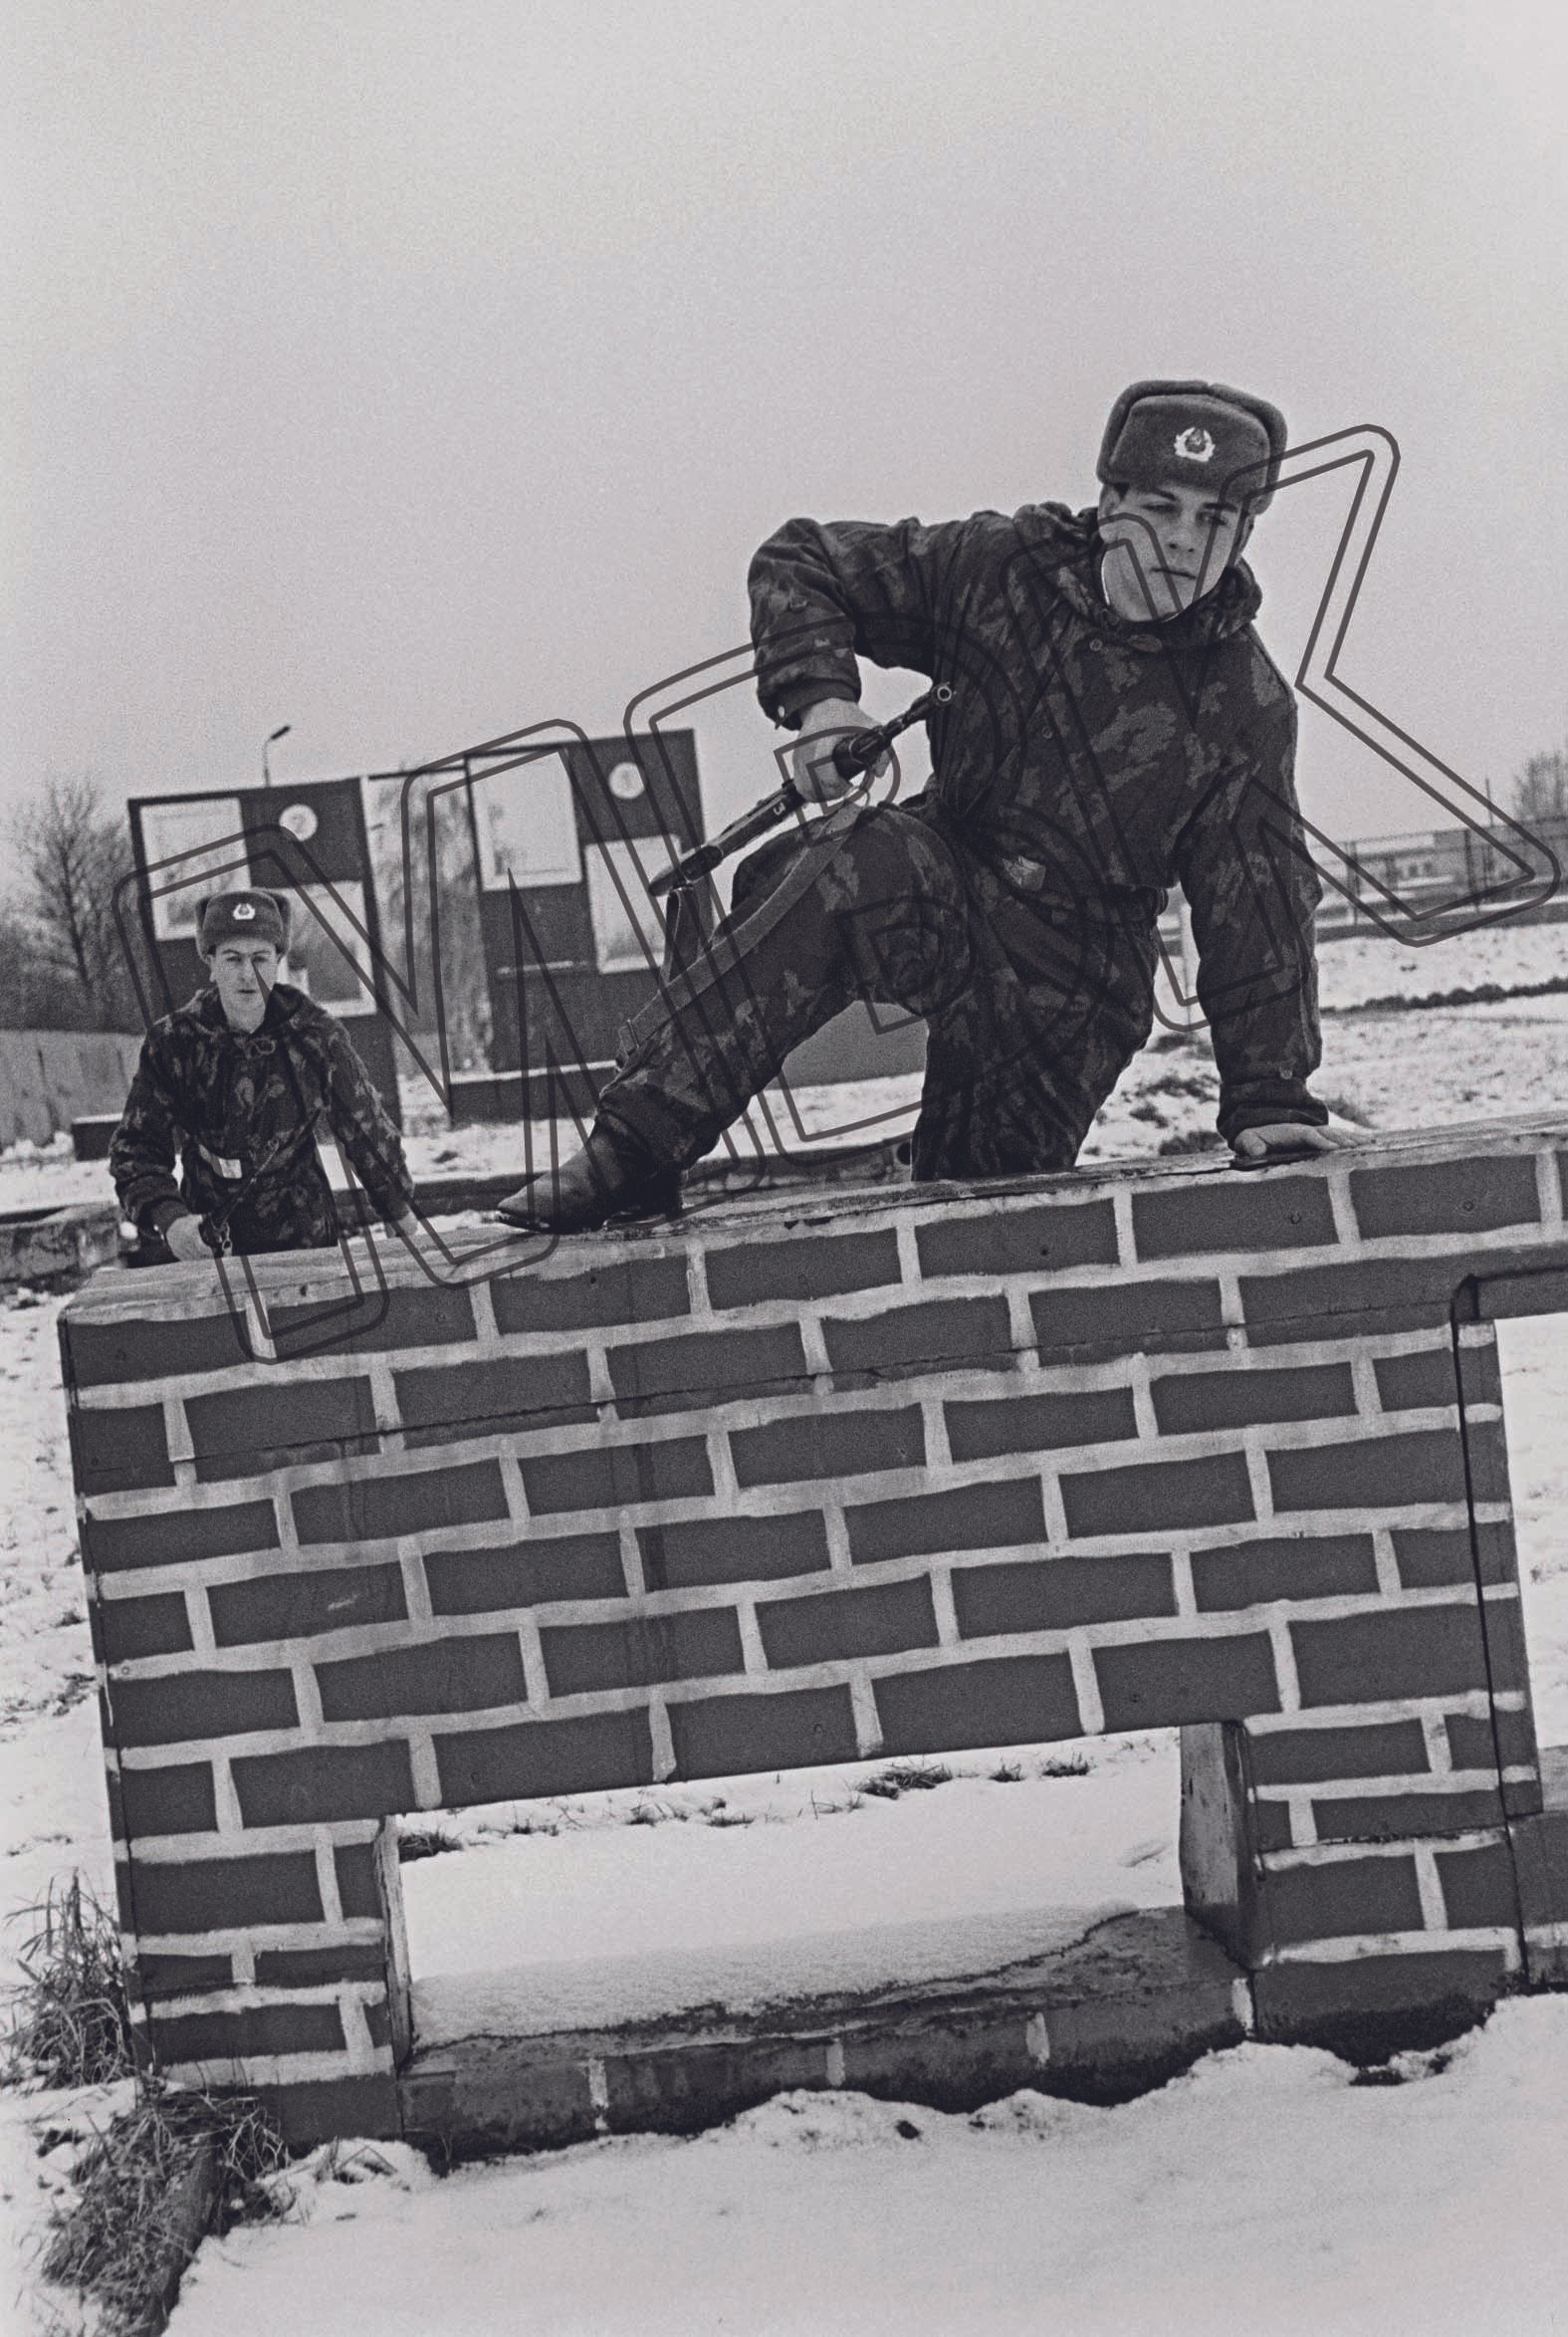 Fotografie: Rekrut der Berlin-Brigade absolviert eine Hindernisstrecke, Februar 1994 (Museum Berlin-Karlshorst RR-P)